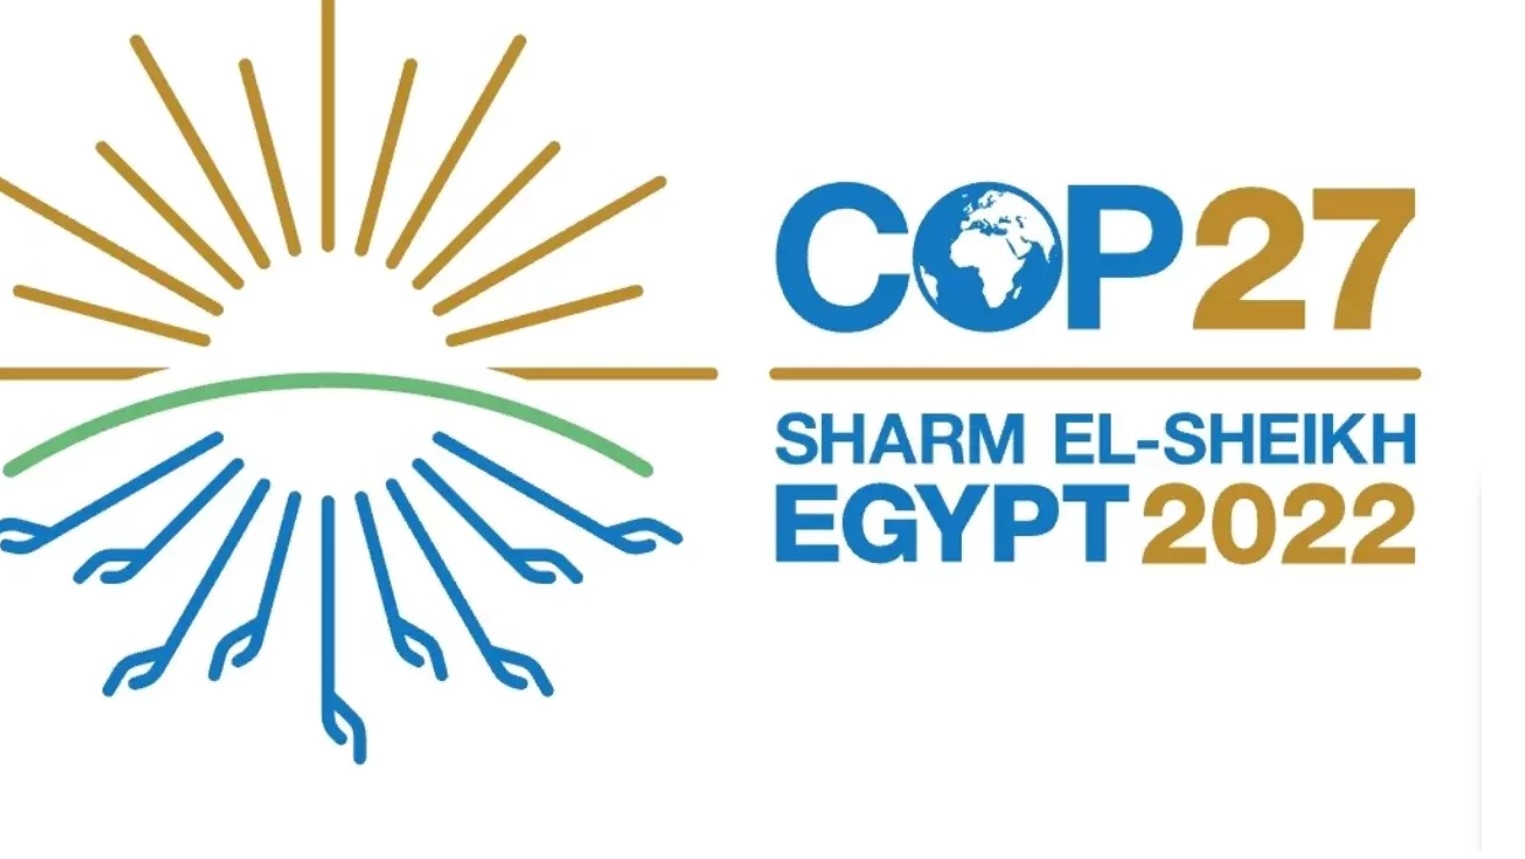 La COP27 se tient du 6 au 28 novembre 2022 en Egypte